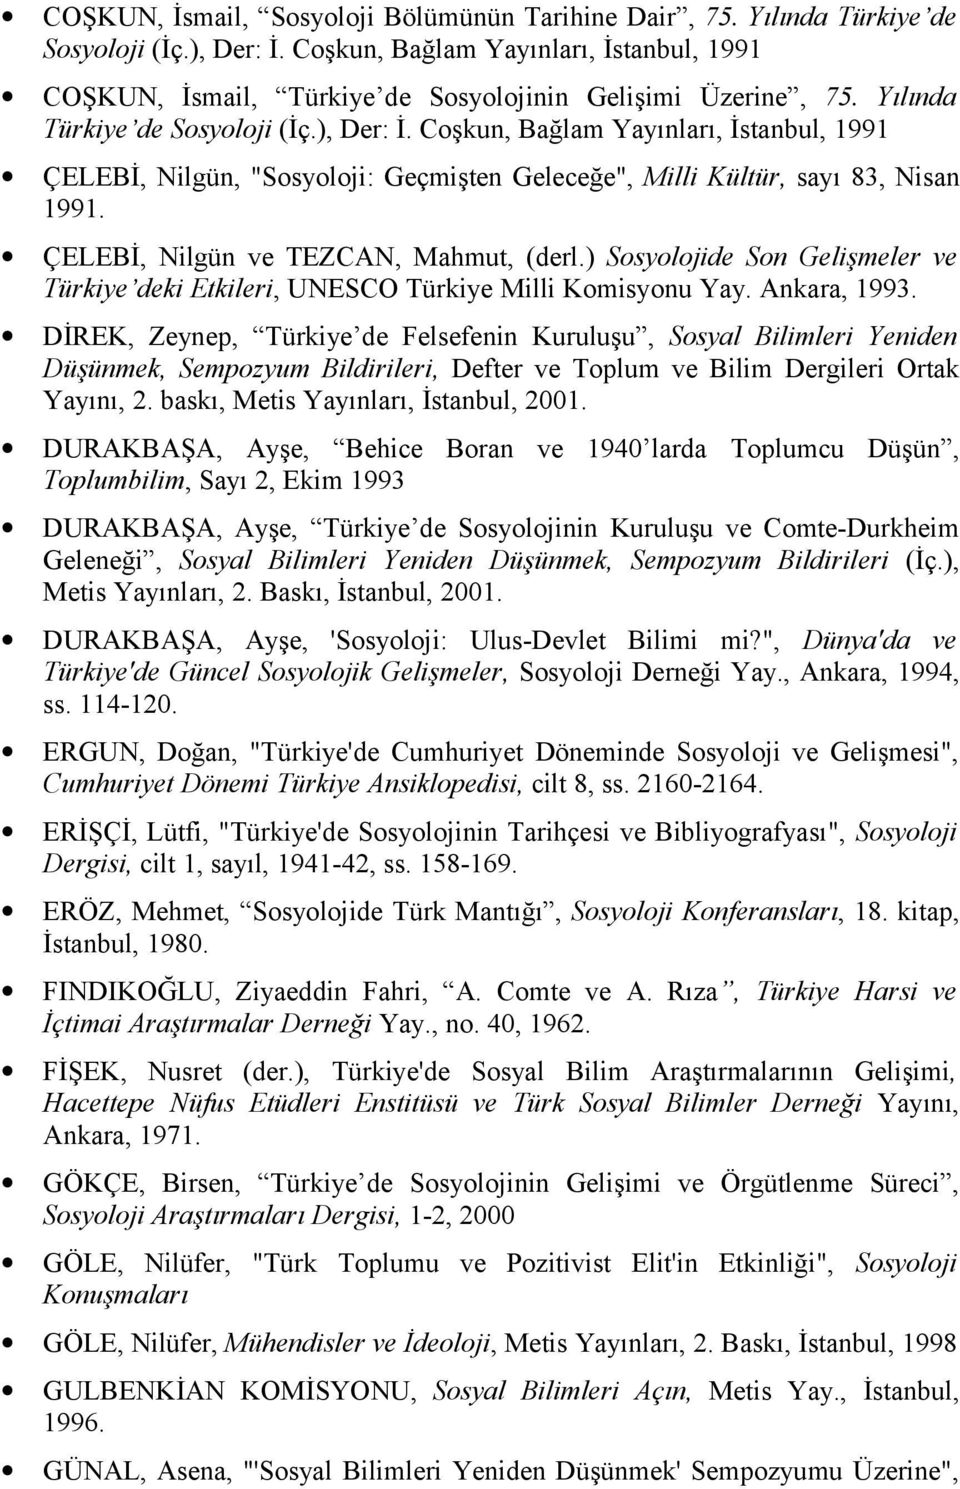 Coşkun, Bağlam Yayınları, İstanbul, 1991 ÇELEBİ, Nilgün, "Sosyoloji: Geçmişten Geleceğe", Milli Kültür, sayı 83, Nisan 1991. ÇELEBİ, Nilgün ve TEZCAN, Mahmut, (derl.